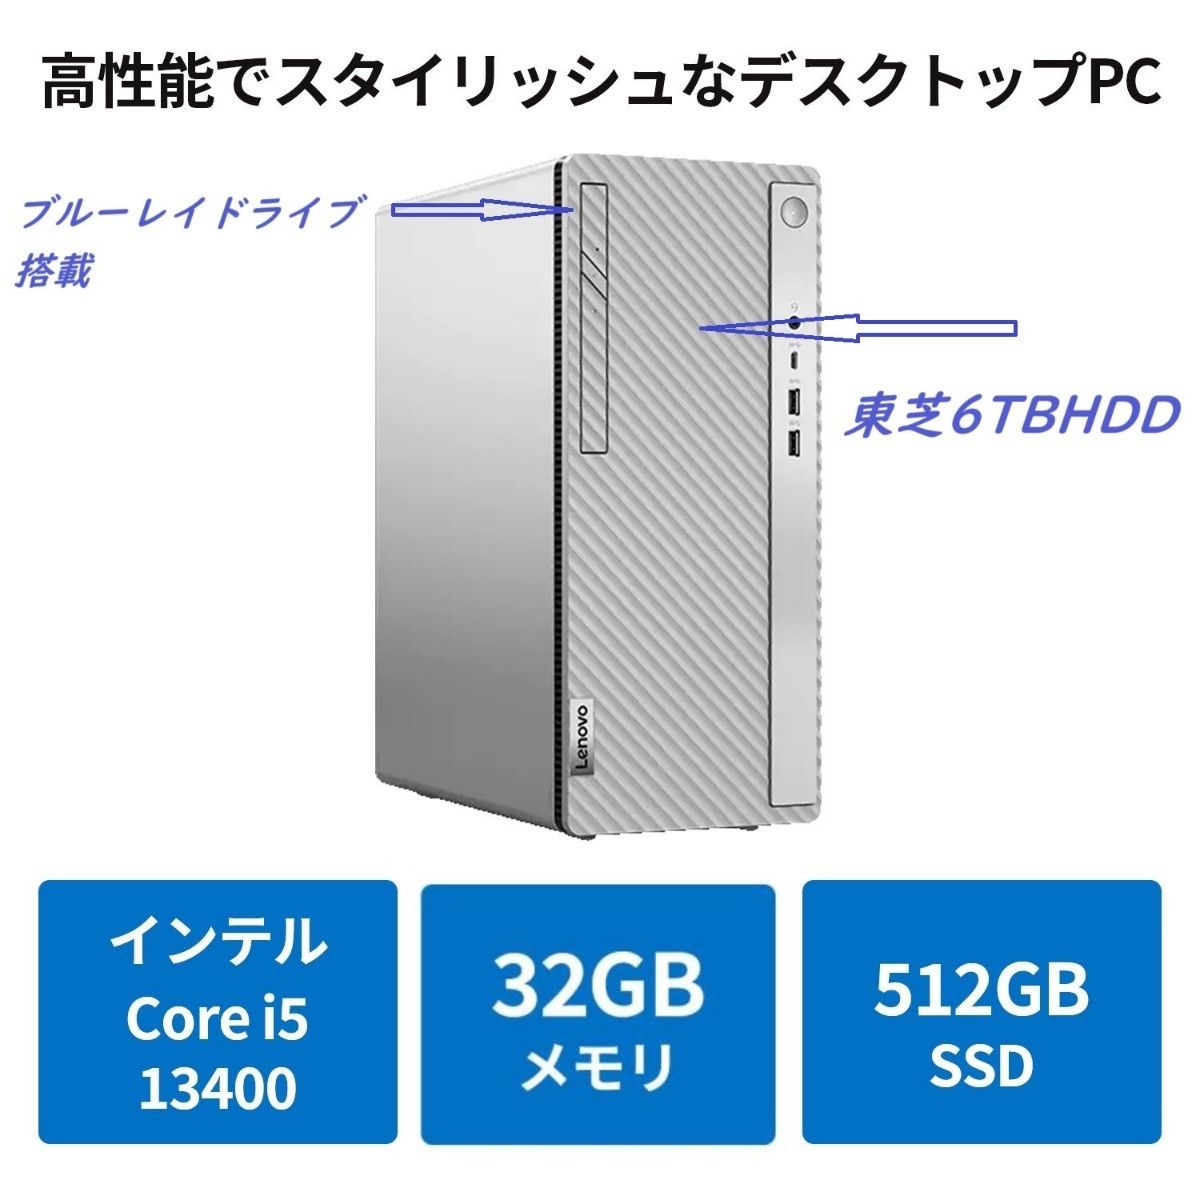 新品 Lenovo IdeaCentre 5i Gen 8  32GBメモリー 512GB SSD  6TBHDD  ブルーレイ